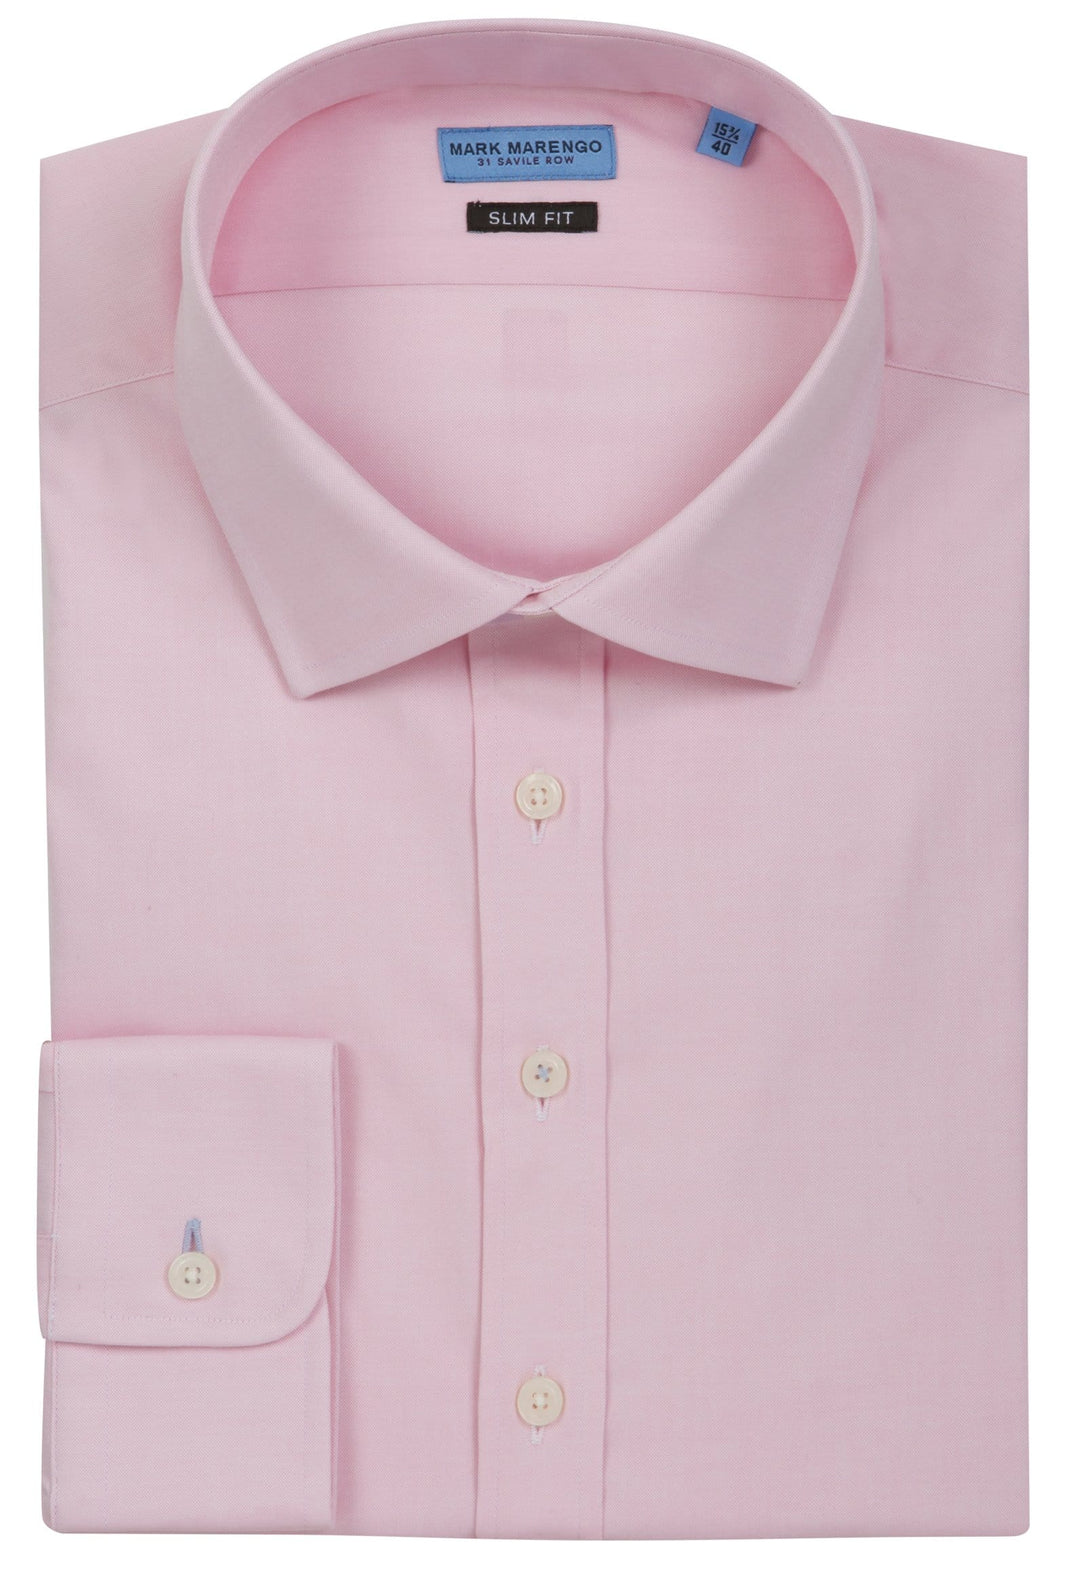 Light Pink Pinpoint Shirt - Mark marengo